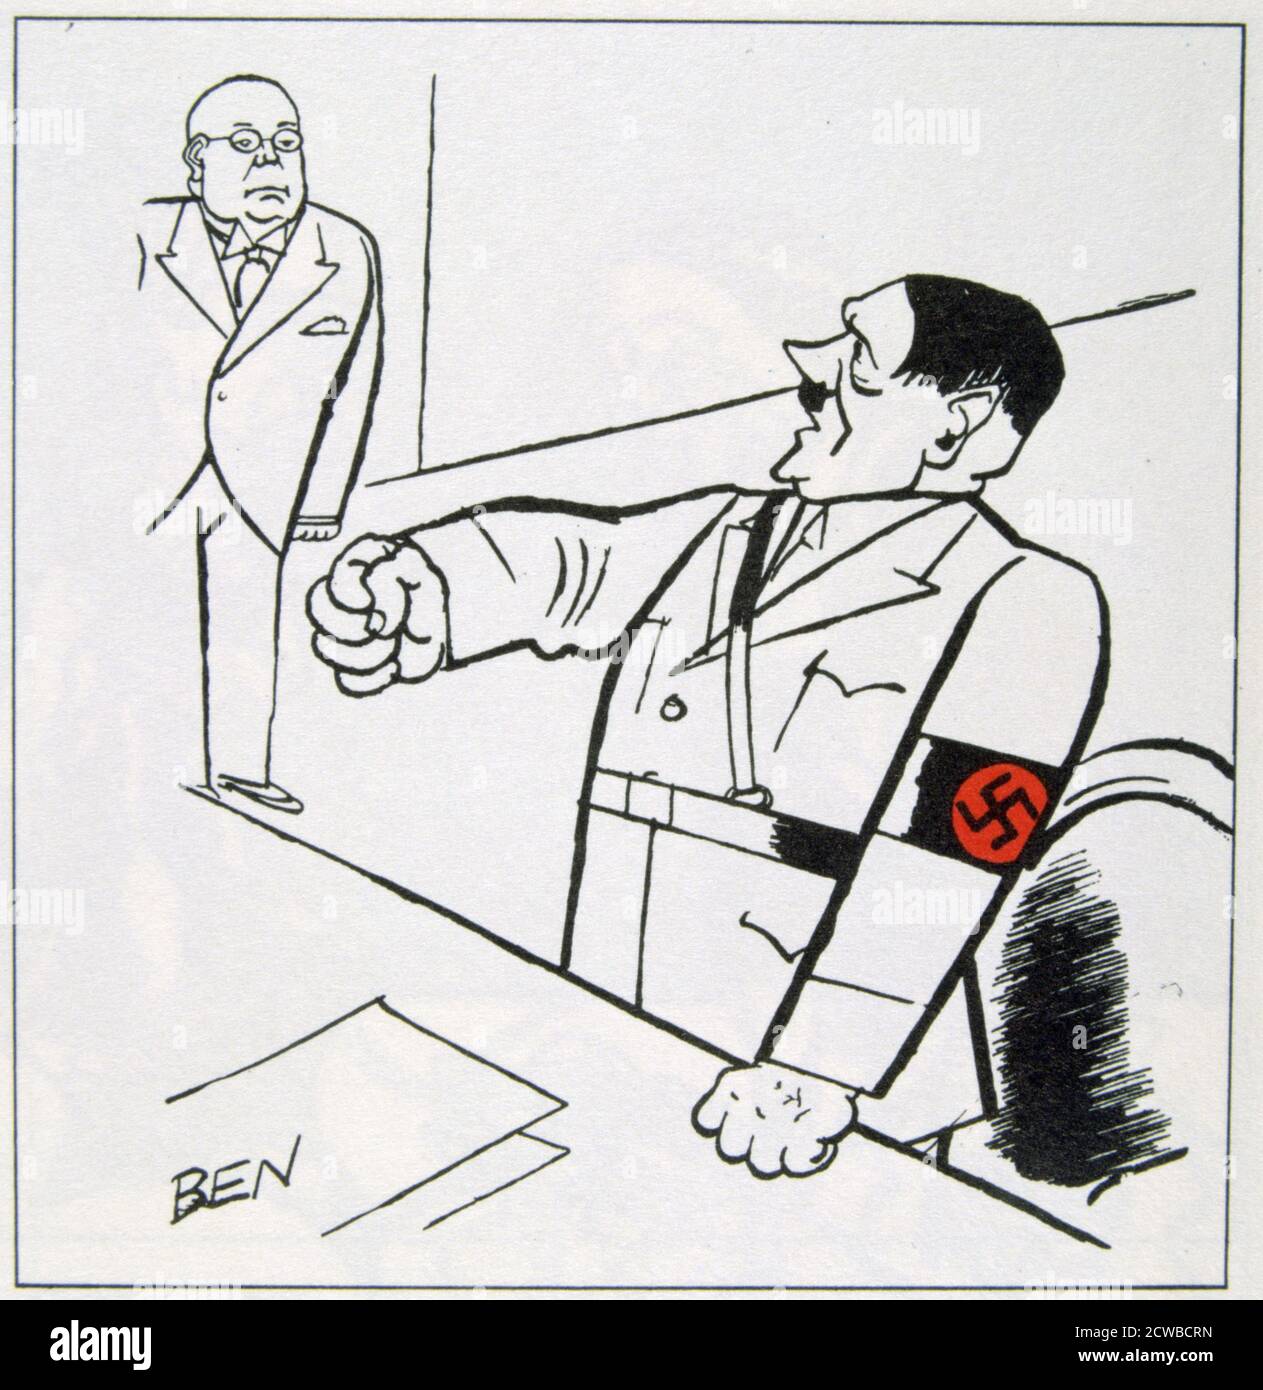 Una caricatura de Adolf Hitler, 1936. Una caricatura en le Petit Bleu, 12 de marzo de 1936 por el caricaturista Ben. Foto de stock